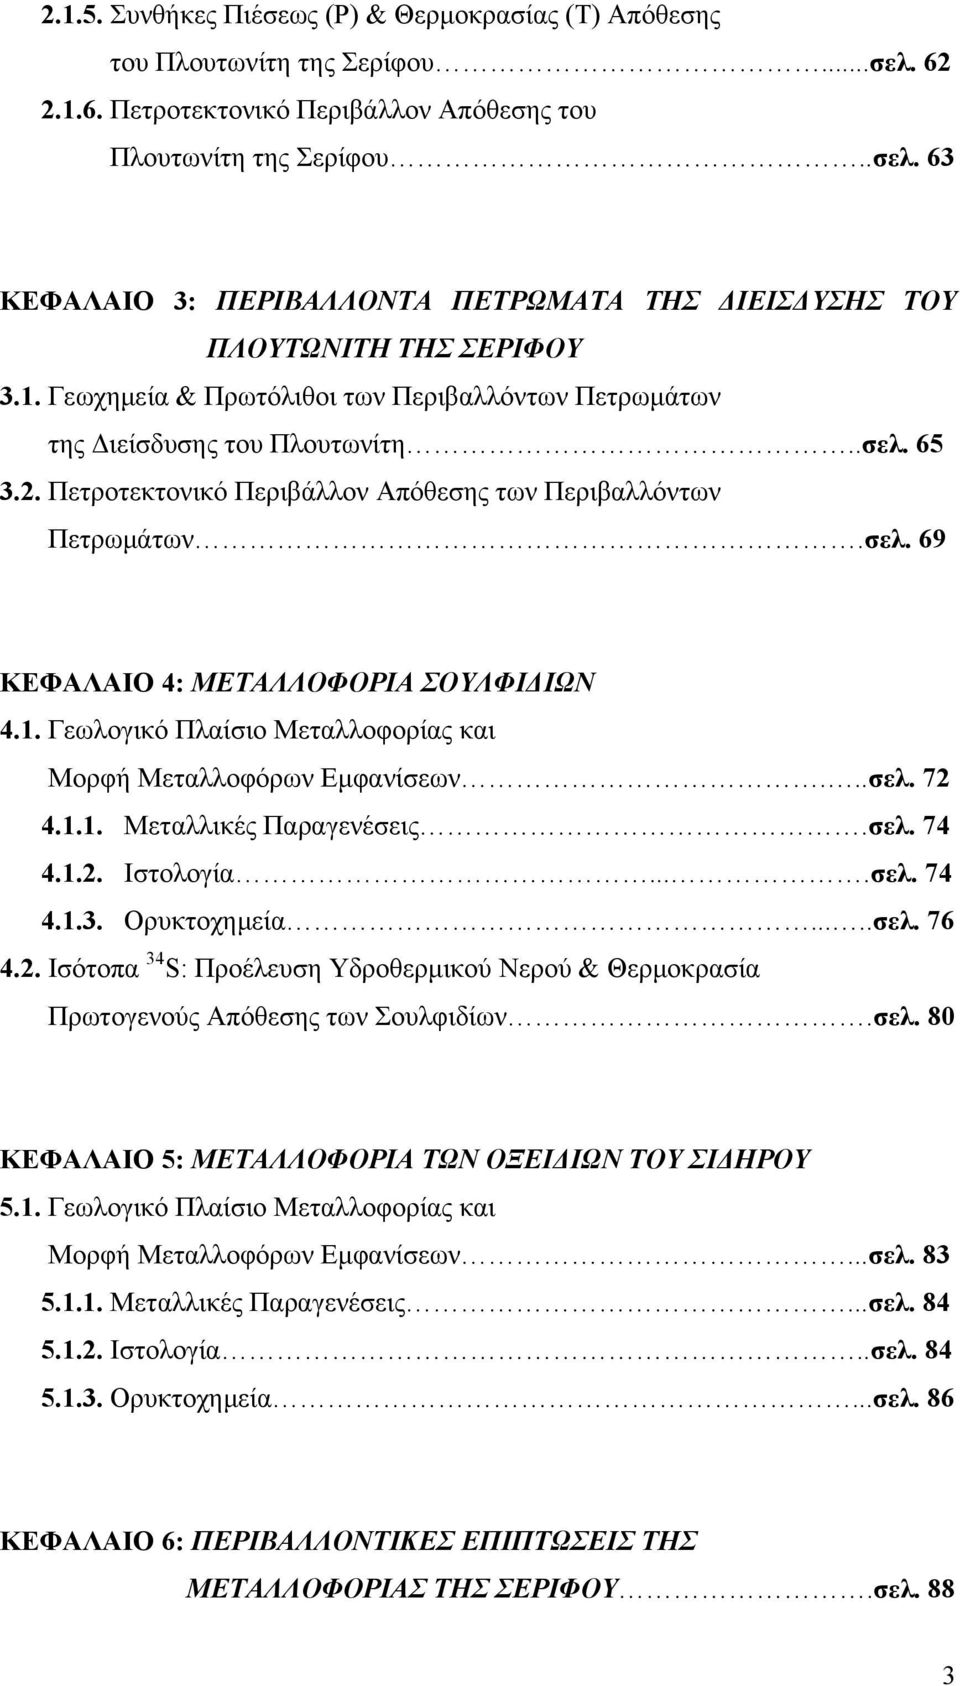 1. Γεωλογικό Πλαίσιο Μεταλλοφορίας και Μορφή Μεταλλοφόρων Εμφανίσεων...σελ. 72 4.1.1. Μεταλλικές Παραγενέσεις.σελ. 74 4.1.2. Ιστολογία....σελ. 74 4.1.3. Ορυκτοχημεία.....σελ. 76 4.2. Ισότοπα 34 S: Προέλευση Υδροθερμικού Νερού & Θερμοκρασία Πρωτογενούς Απόθεσης των Σουλφιδίων.